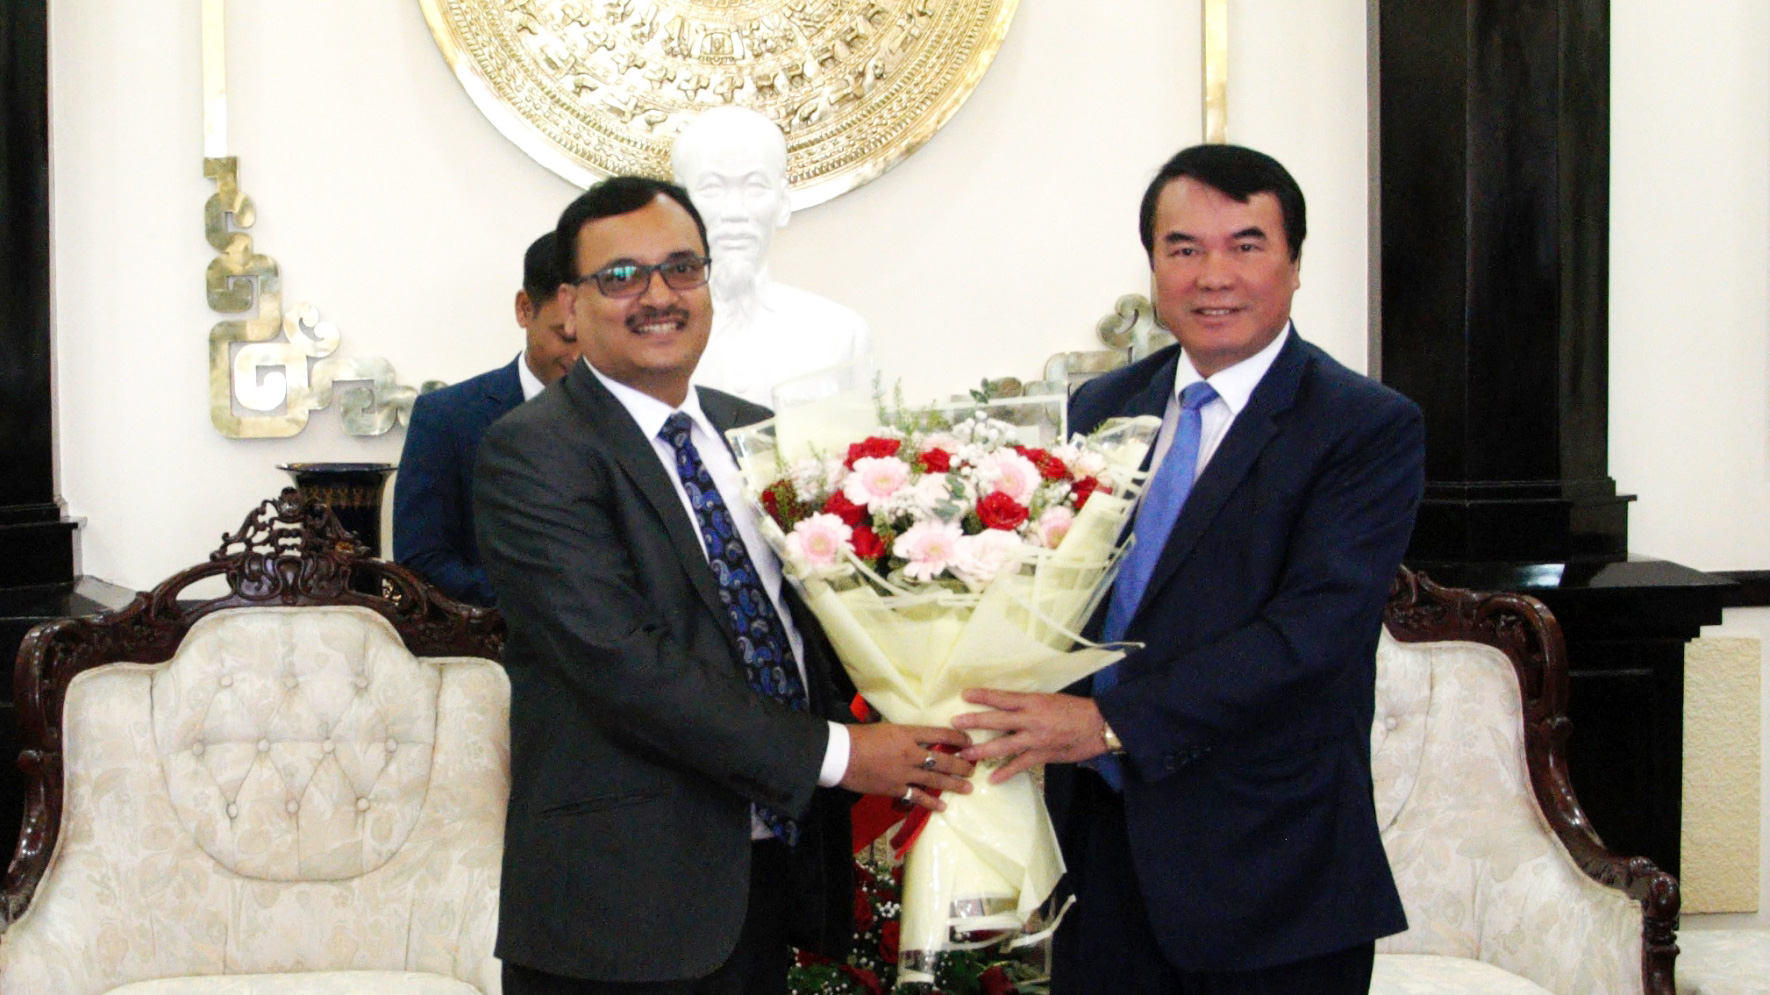 Phó Chủ tịch UBND tỉnh Lâm Đồng tặng hoa cho ông Subhash Prasad Gupta - Phó Đại sứ Ấn Độ tại Việt Nam